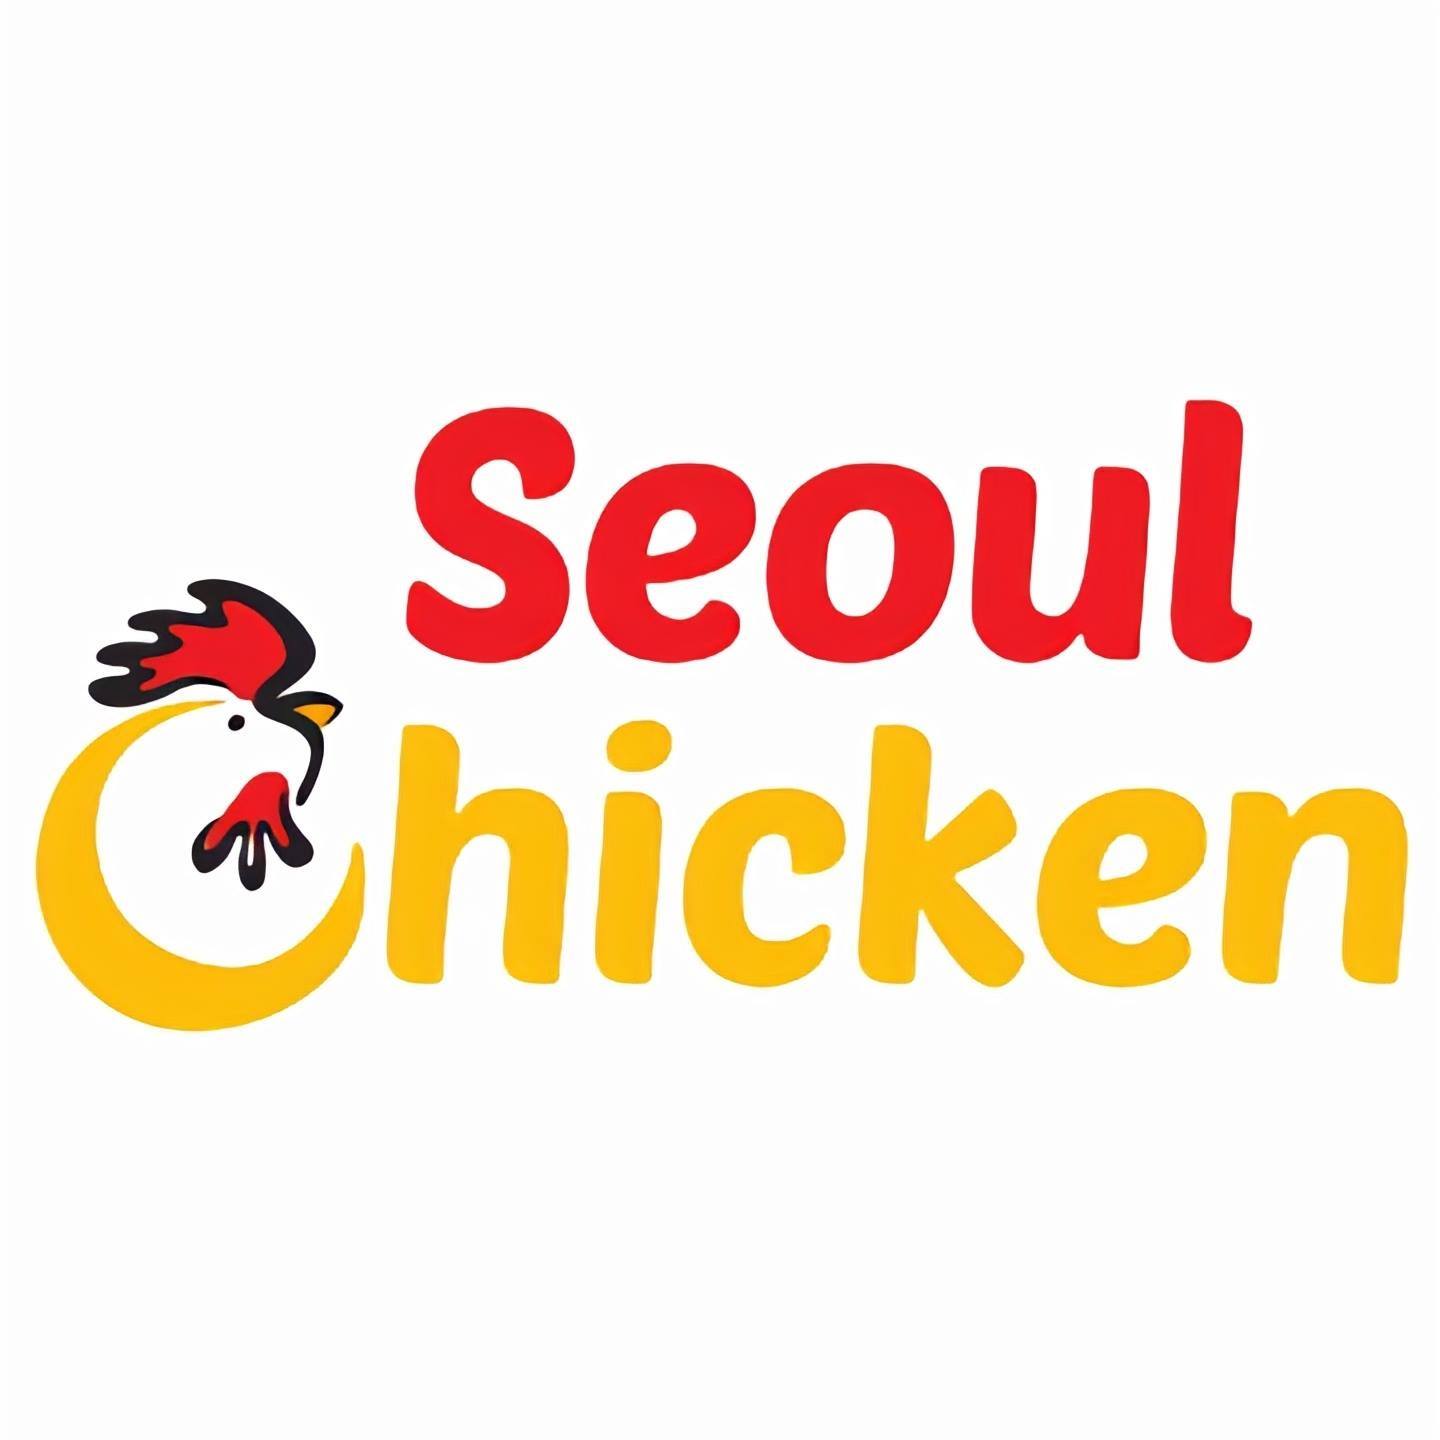 Seoul Chicken